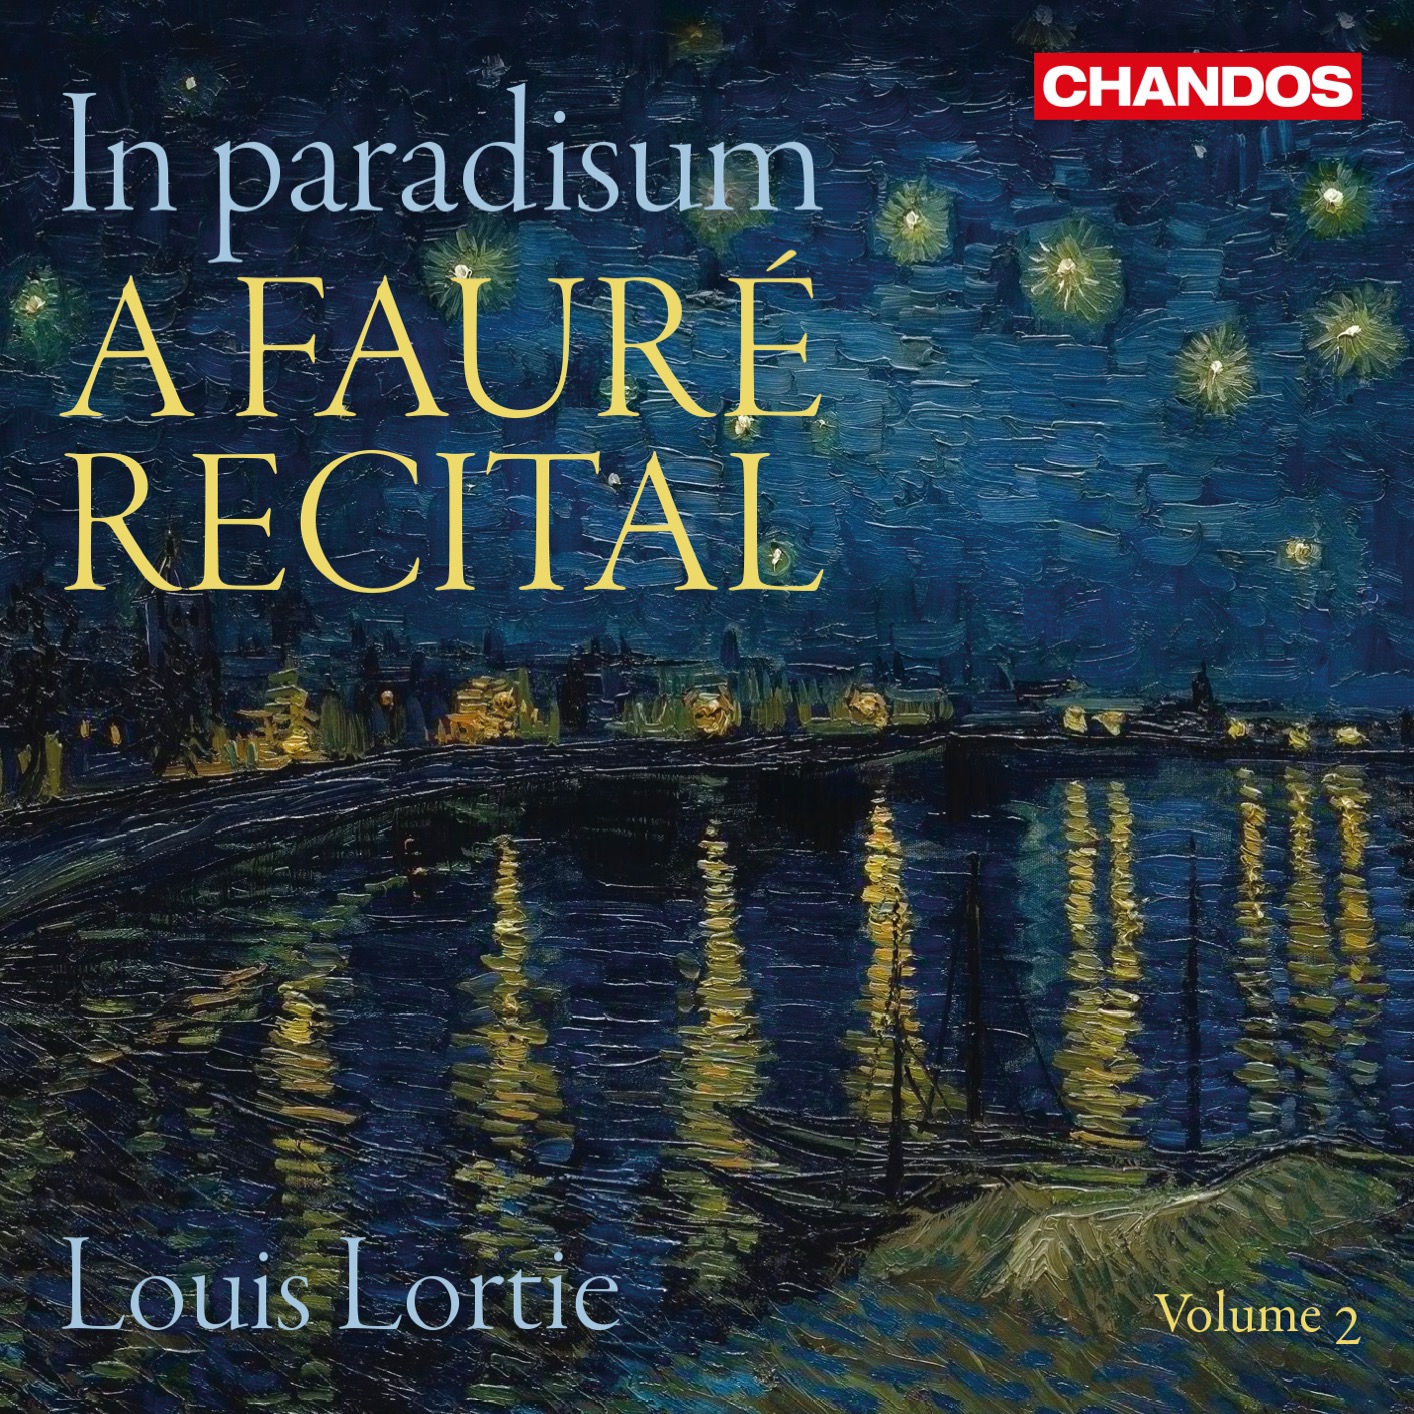 Lortie - Faure Recital, Vol. 2, In paradisum 24-96